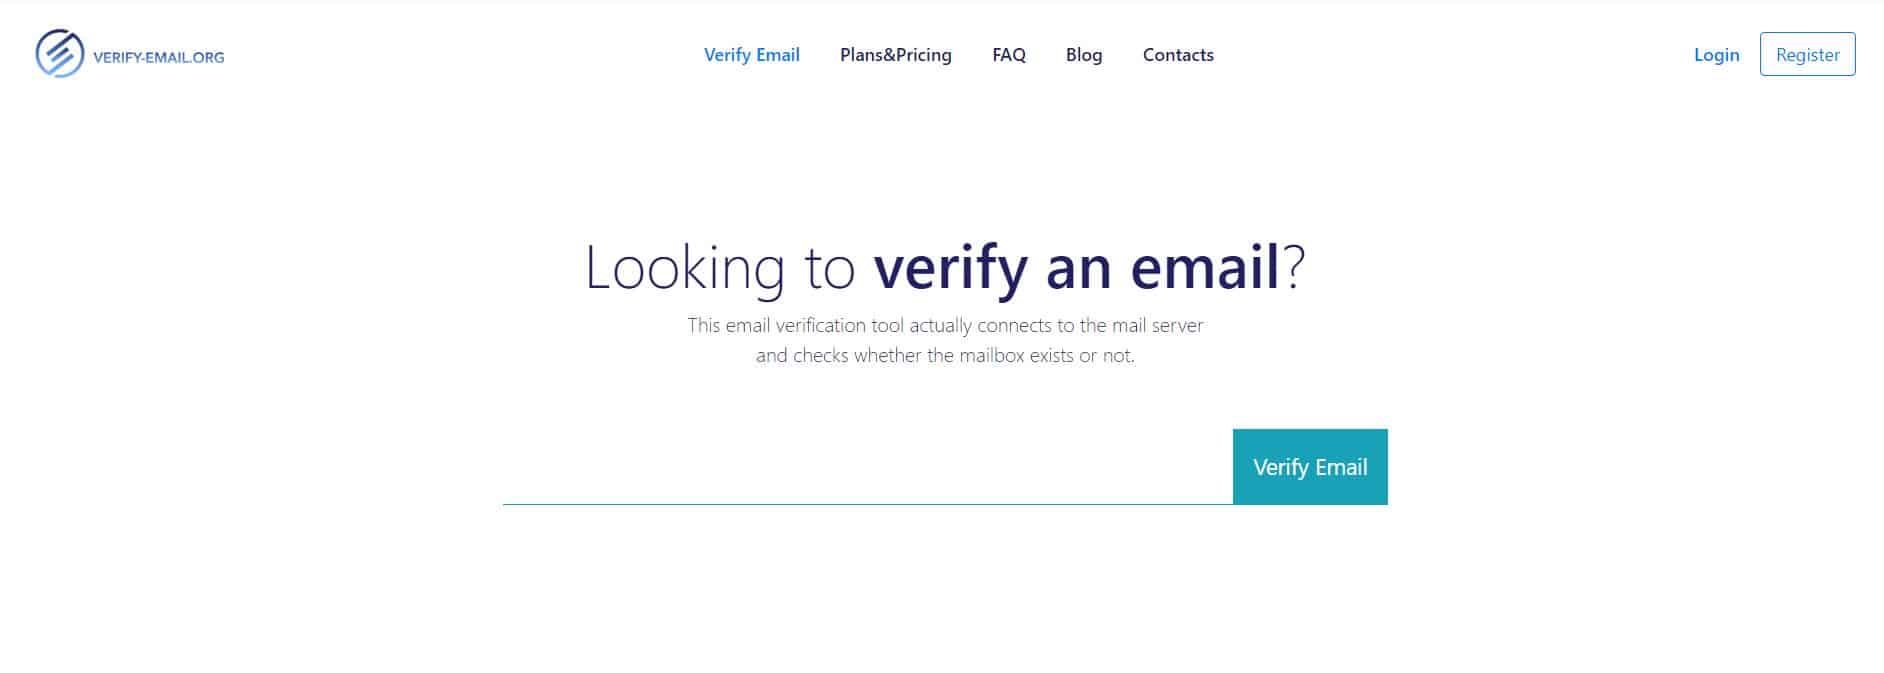 bulk email verifier software